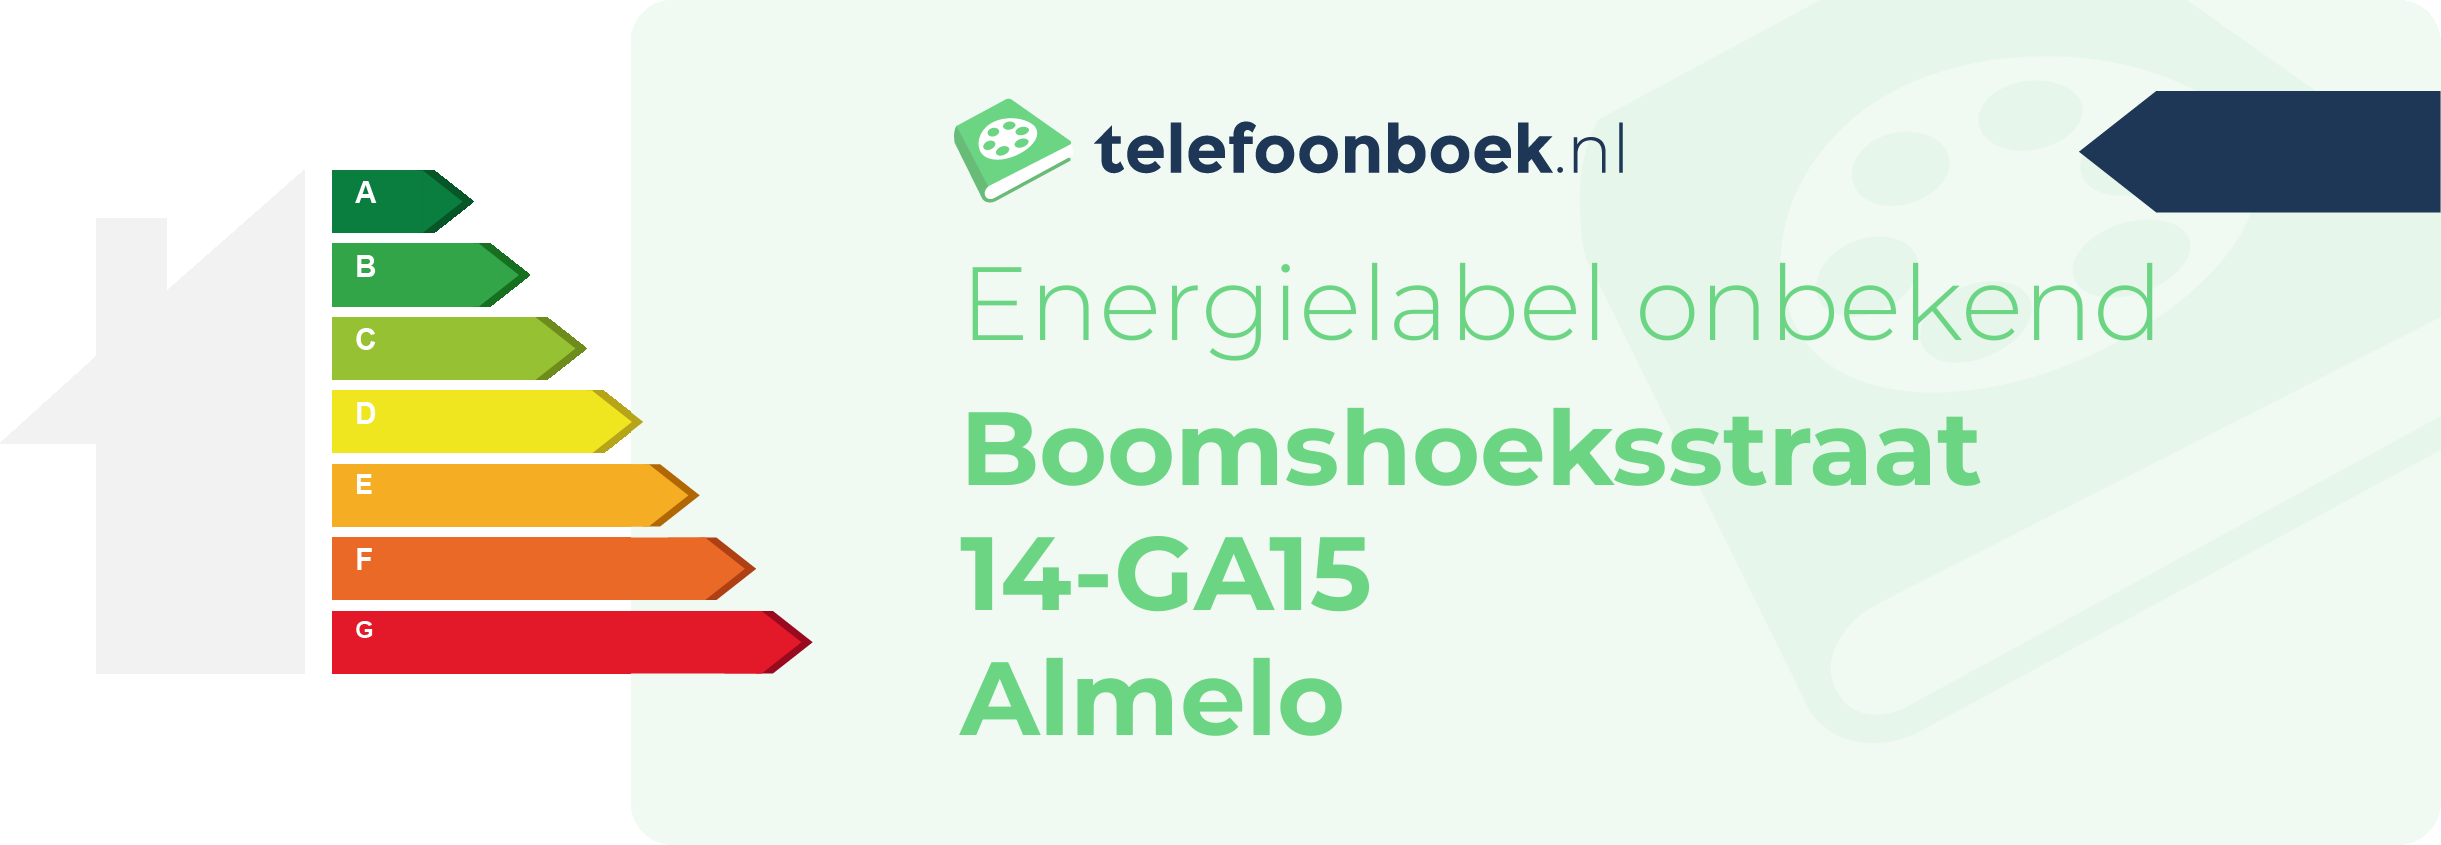 Energielabel Boomshoeksstraat 14-GA15 Almelo